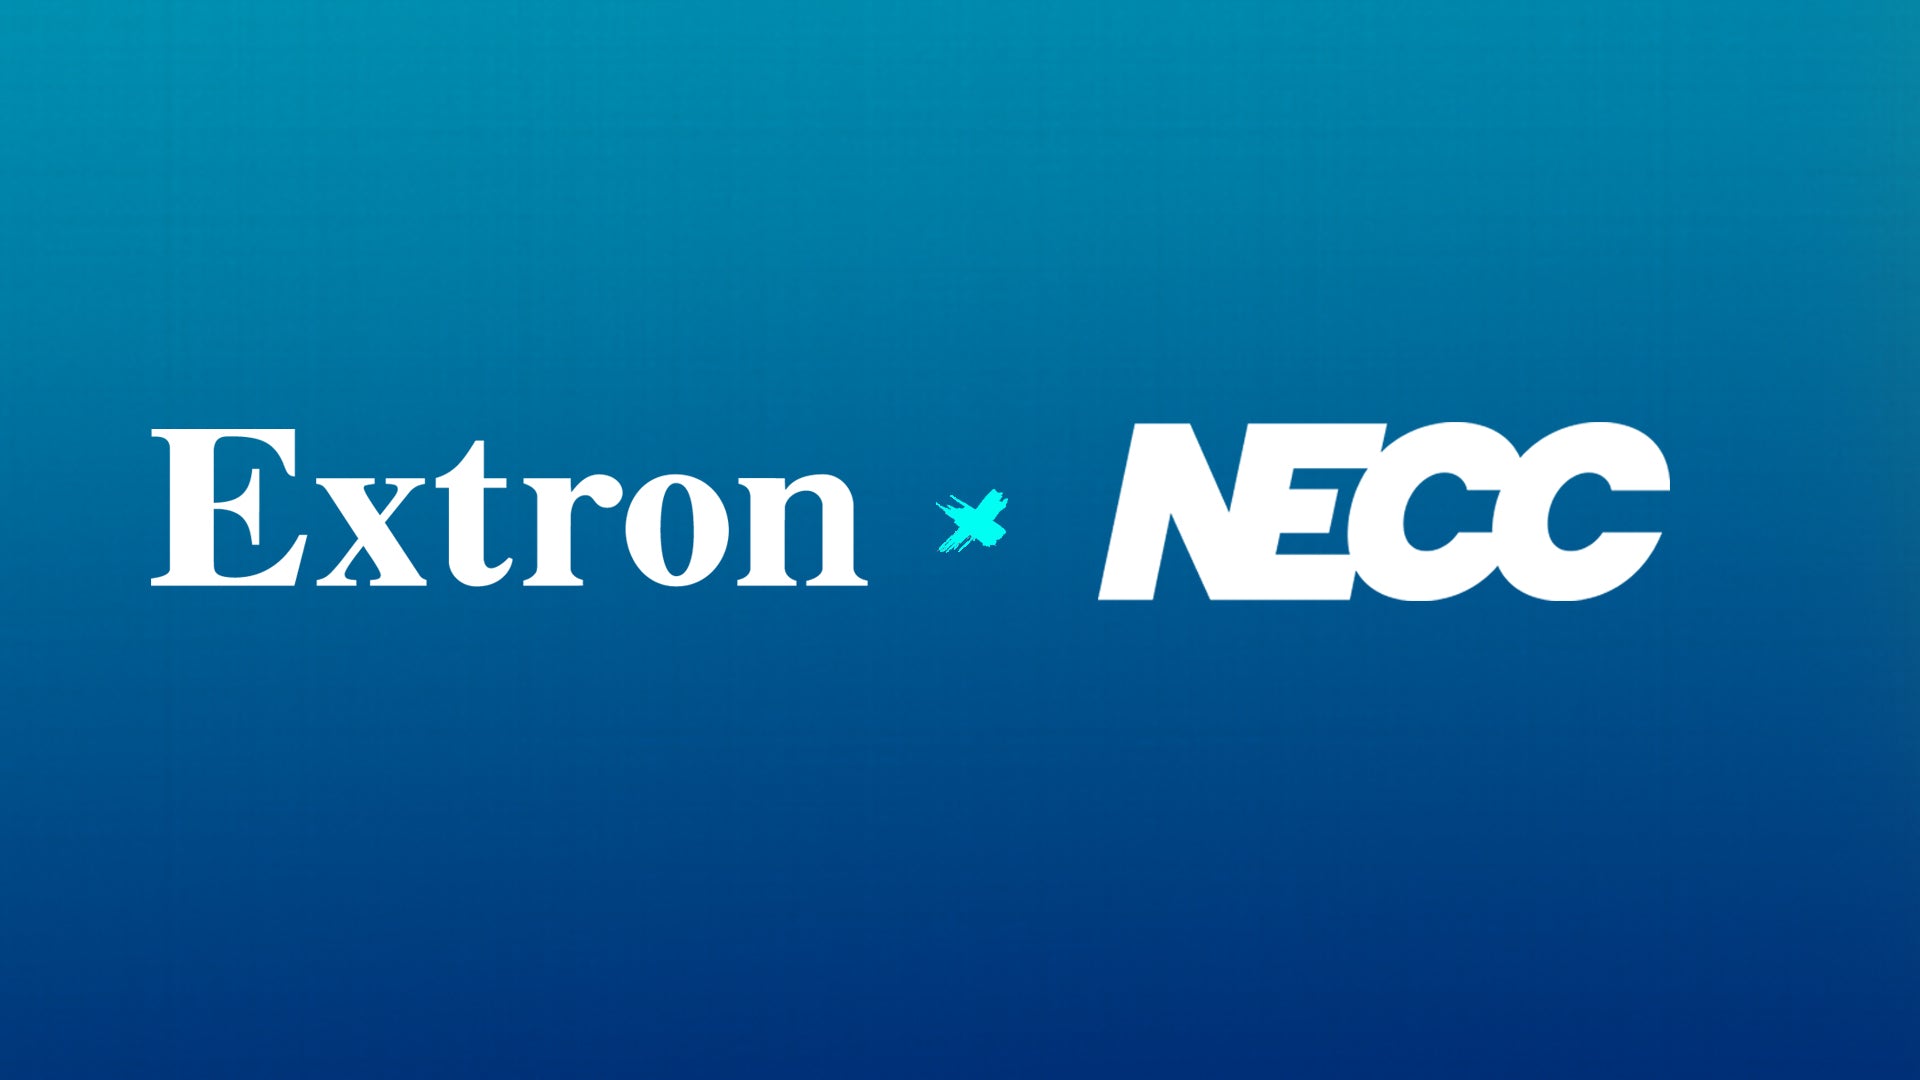 NECC Announces Partnership with AV Leader Extron